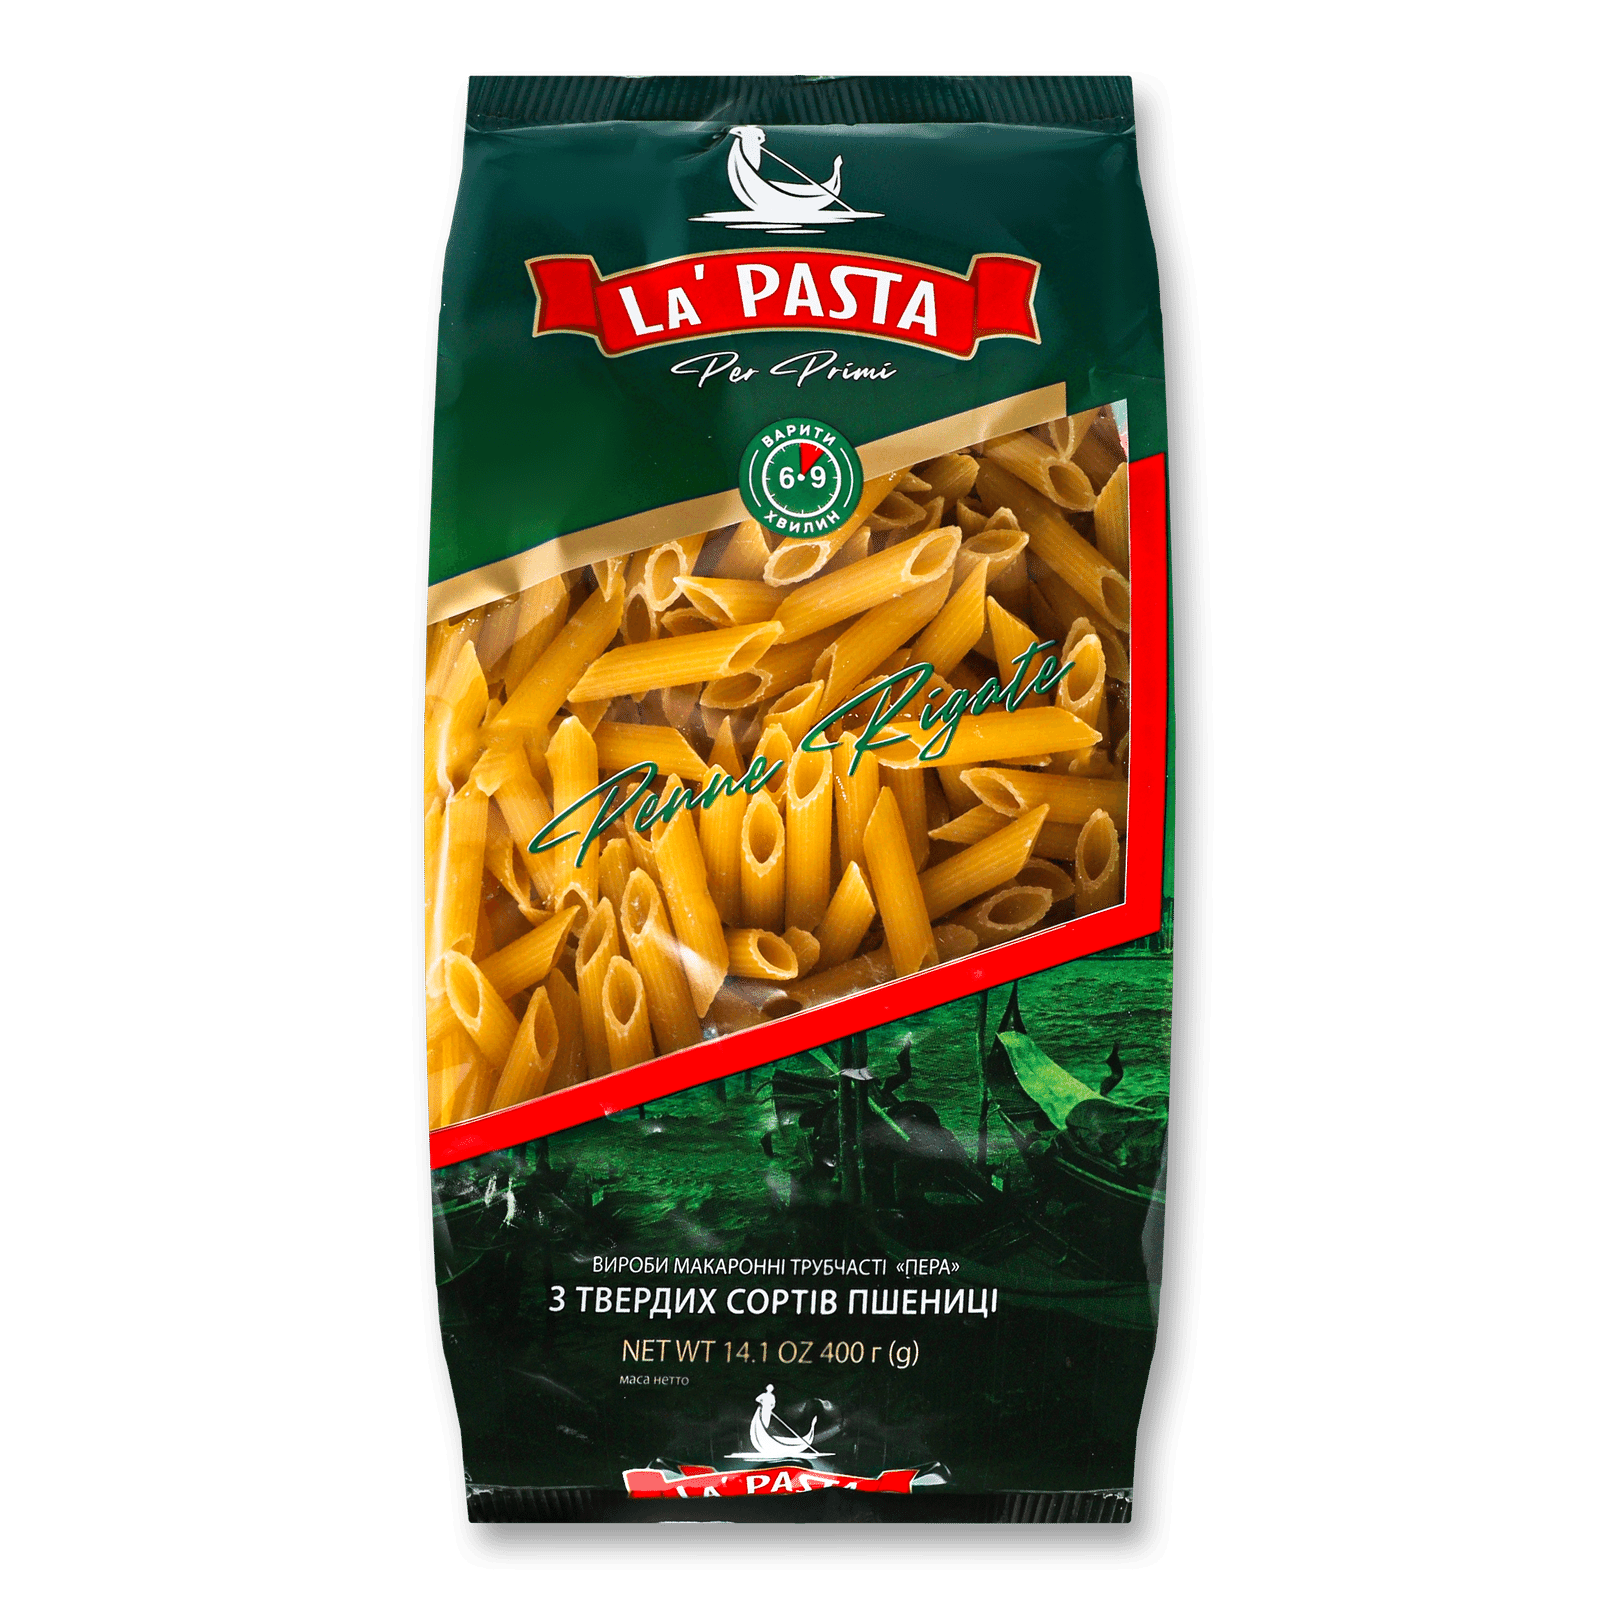 Вироби макаронні La Pasta перо - 1